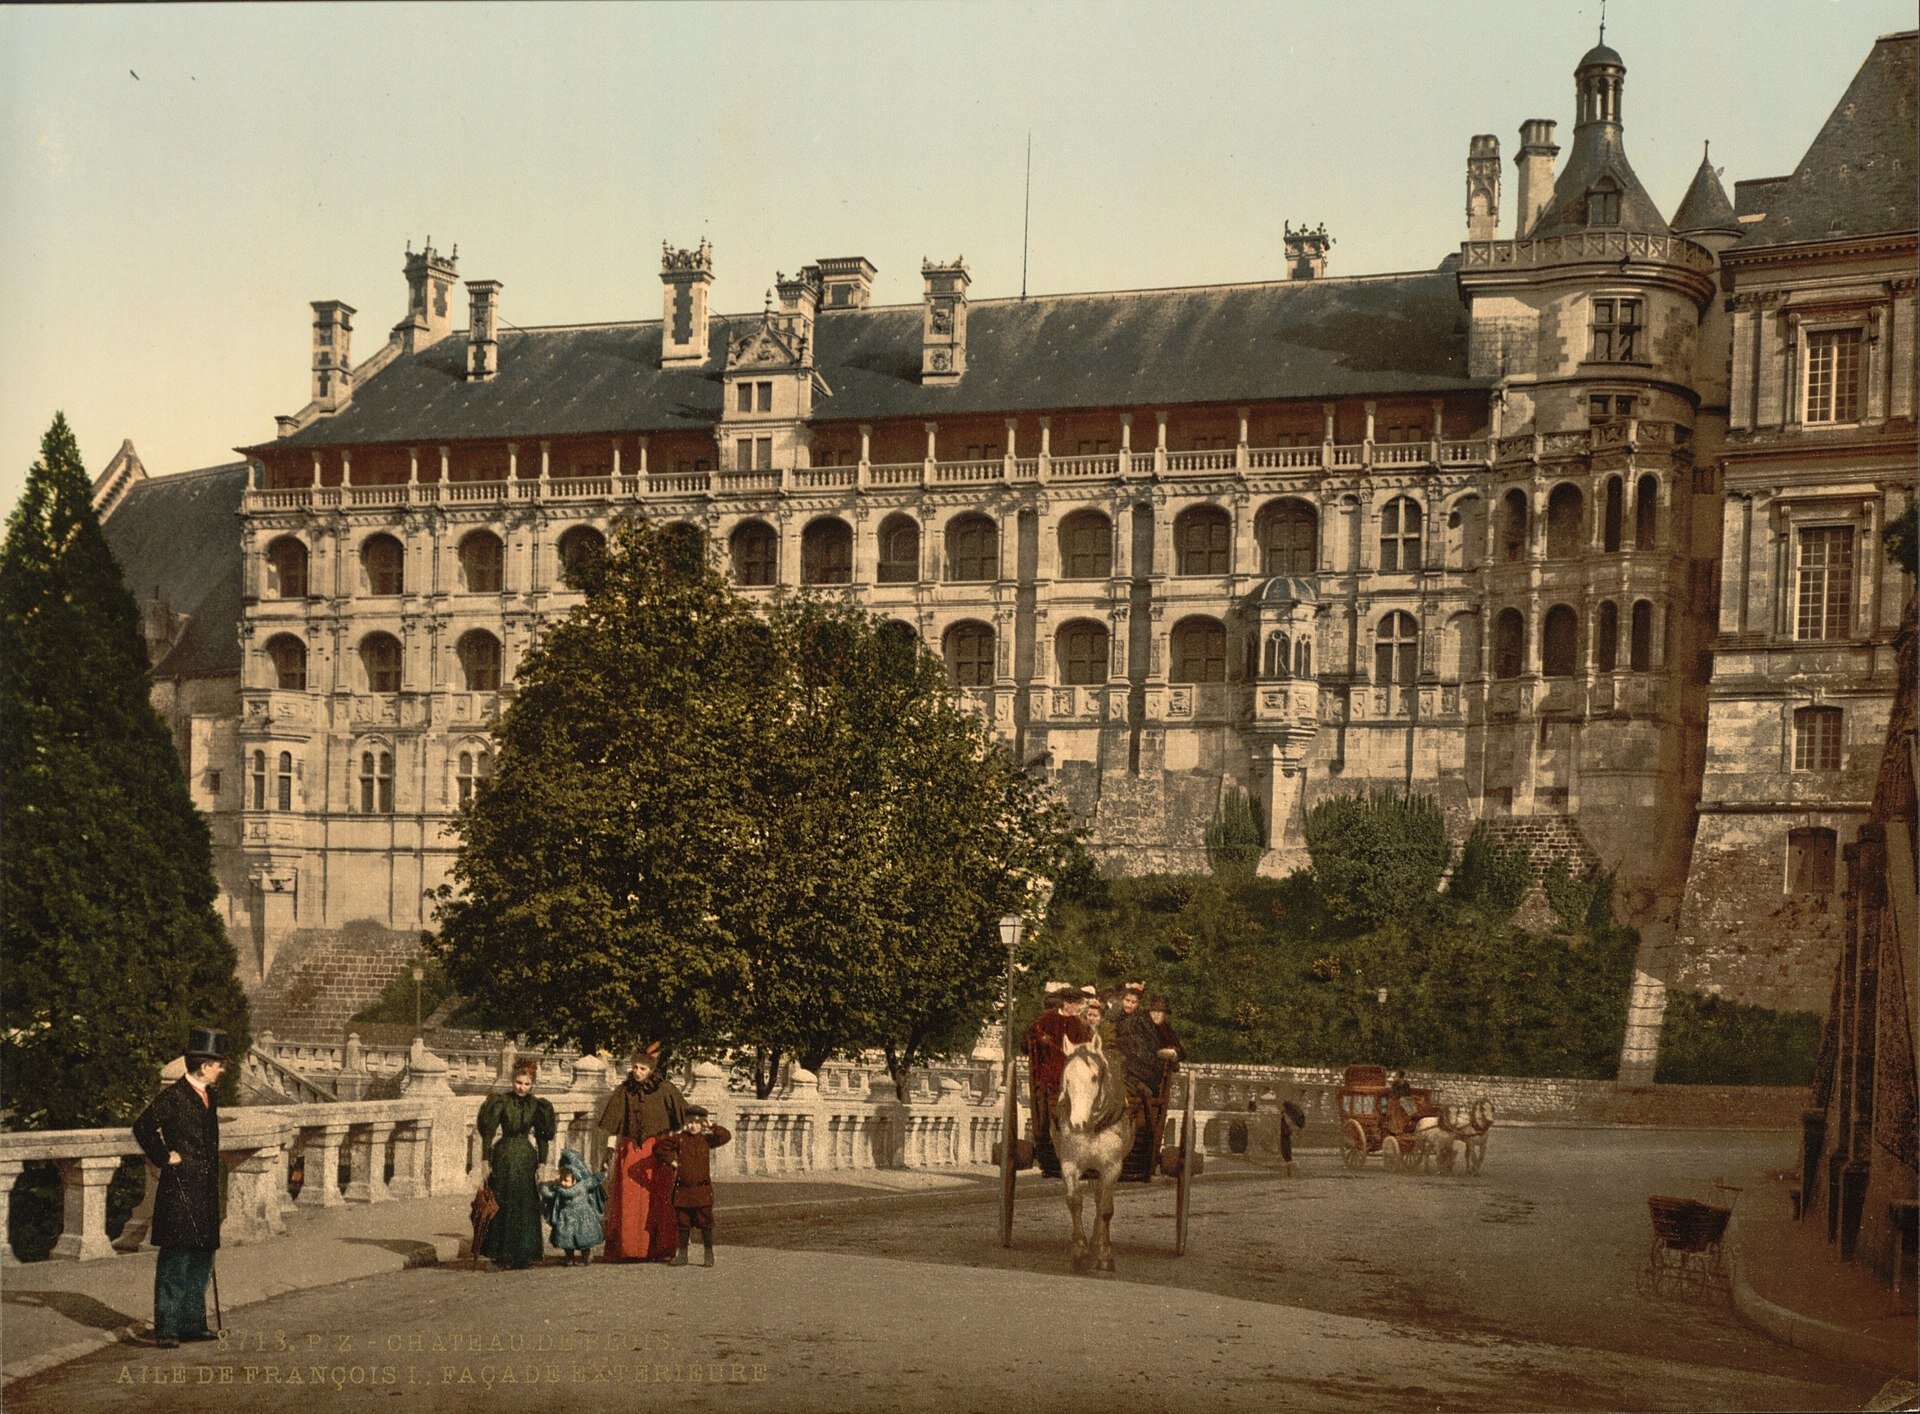 Chateau de Blois 1890s